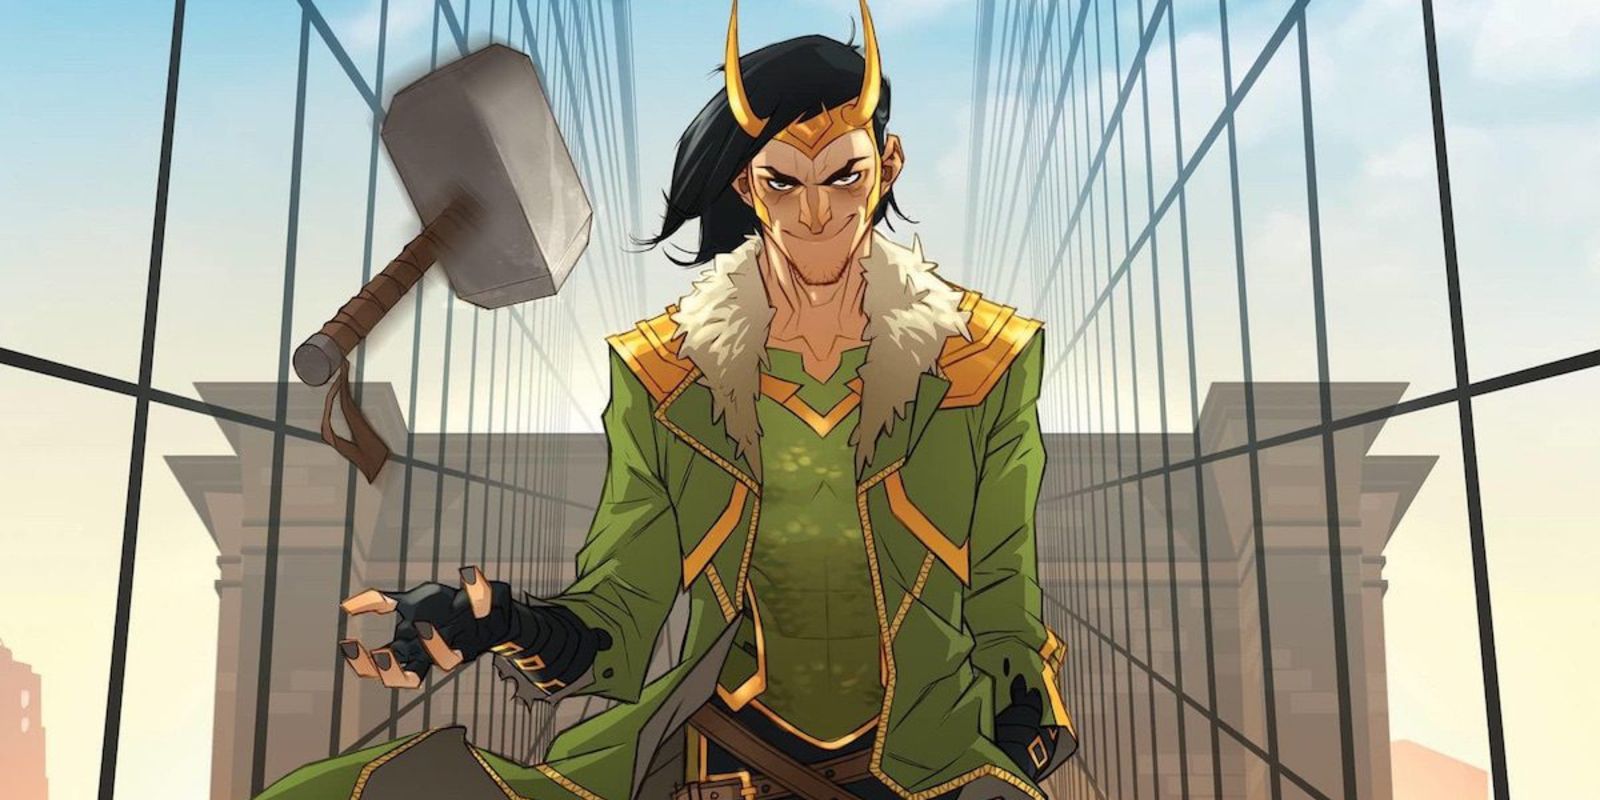 Loki membalik Mjolnir di Bumi dalam komik Loki.